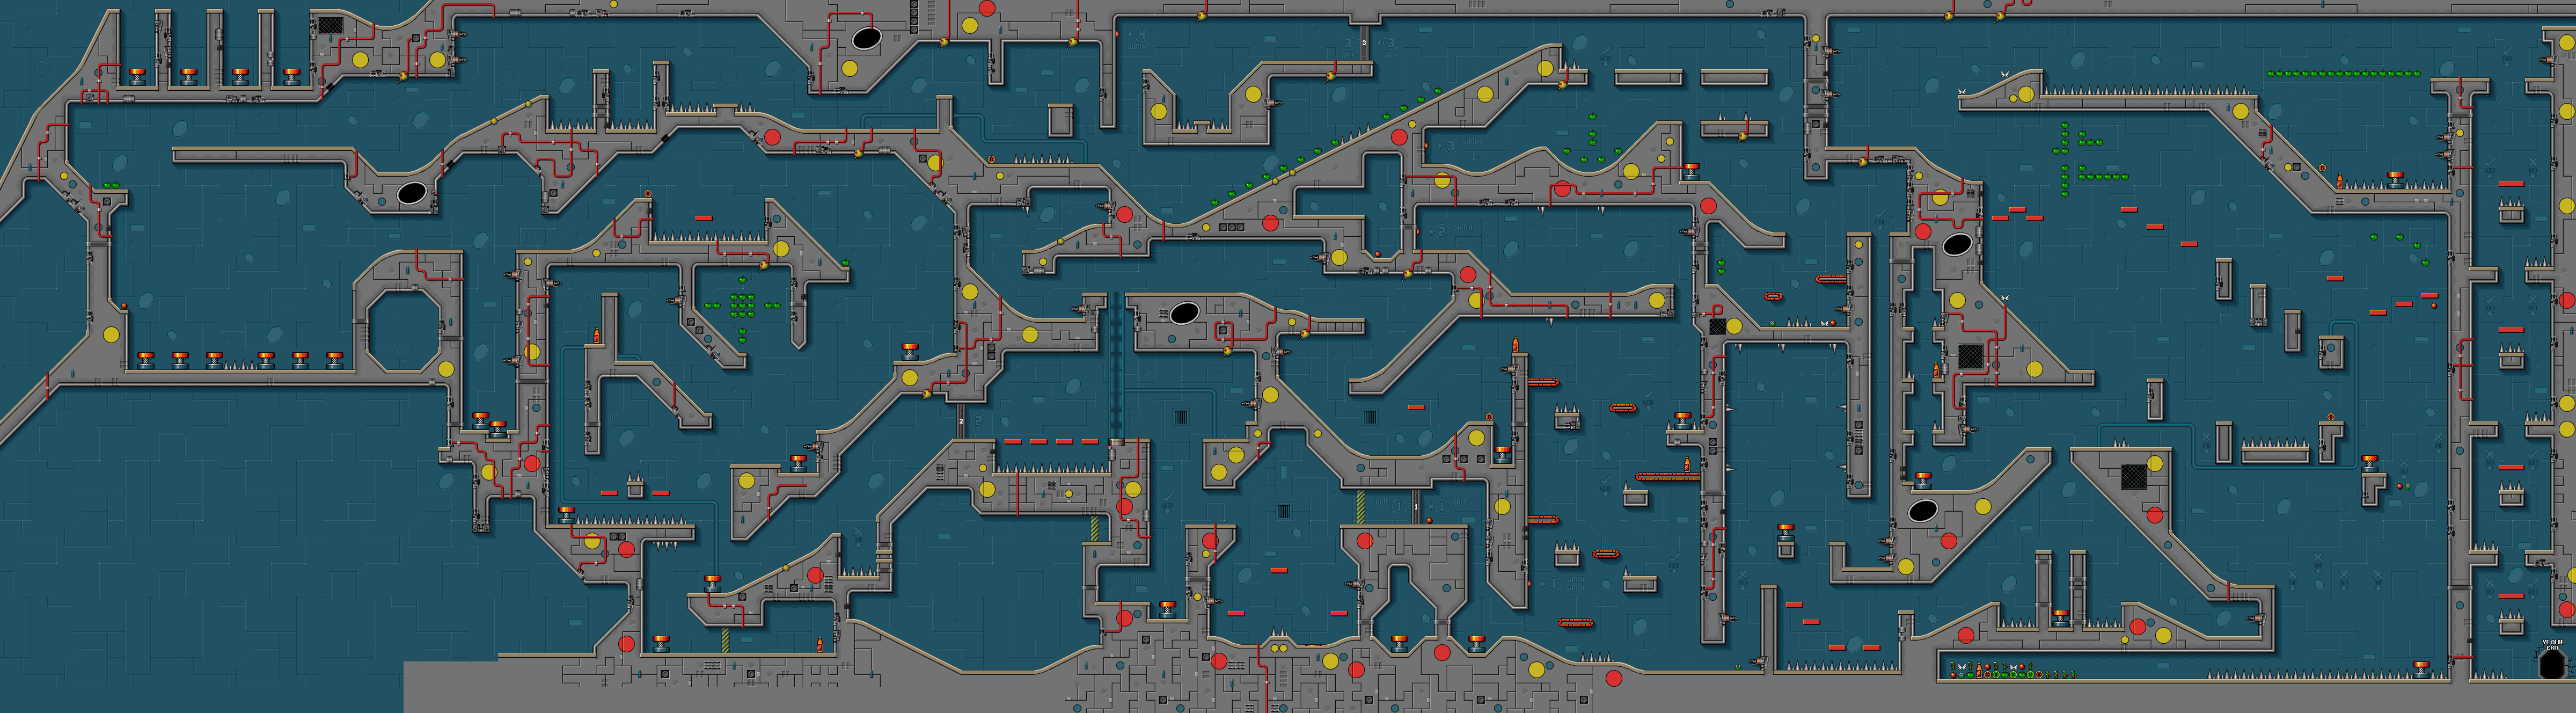 level map designer program